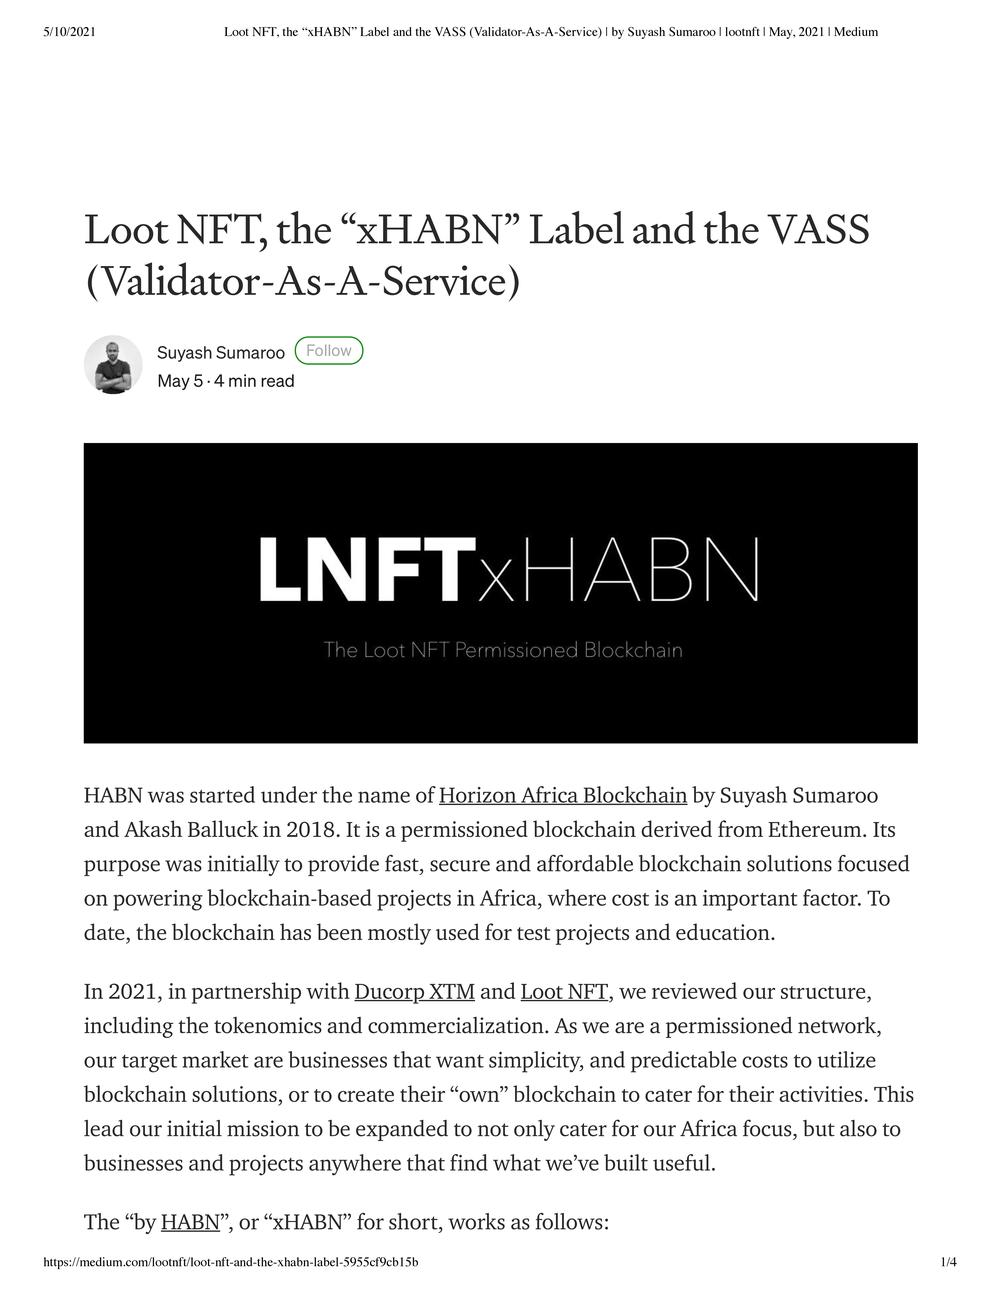 Loot NFT Pre-12 May Articles